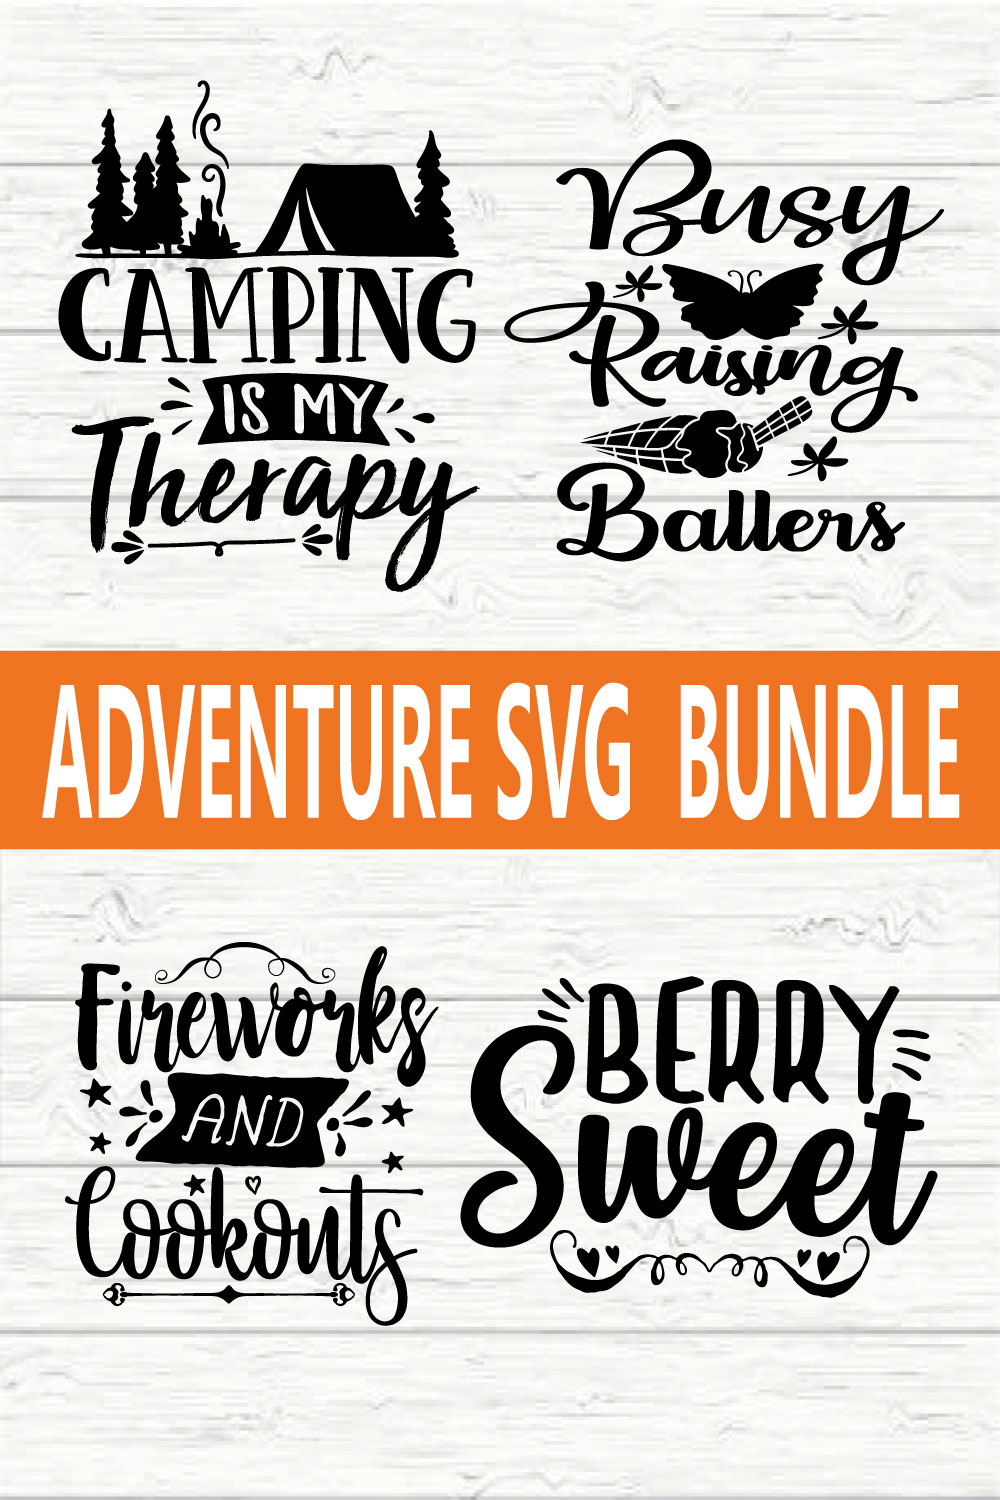 Adventure Svg Bundle vol 2 pinterest preview image.